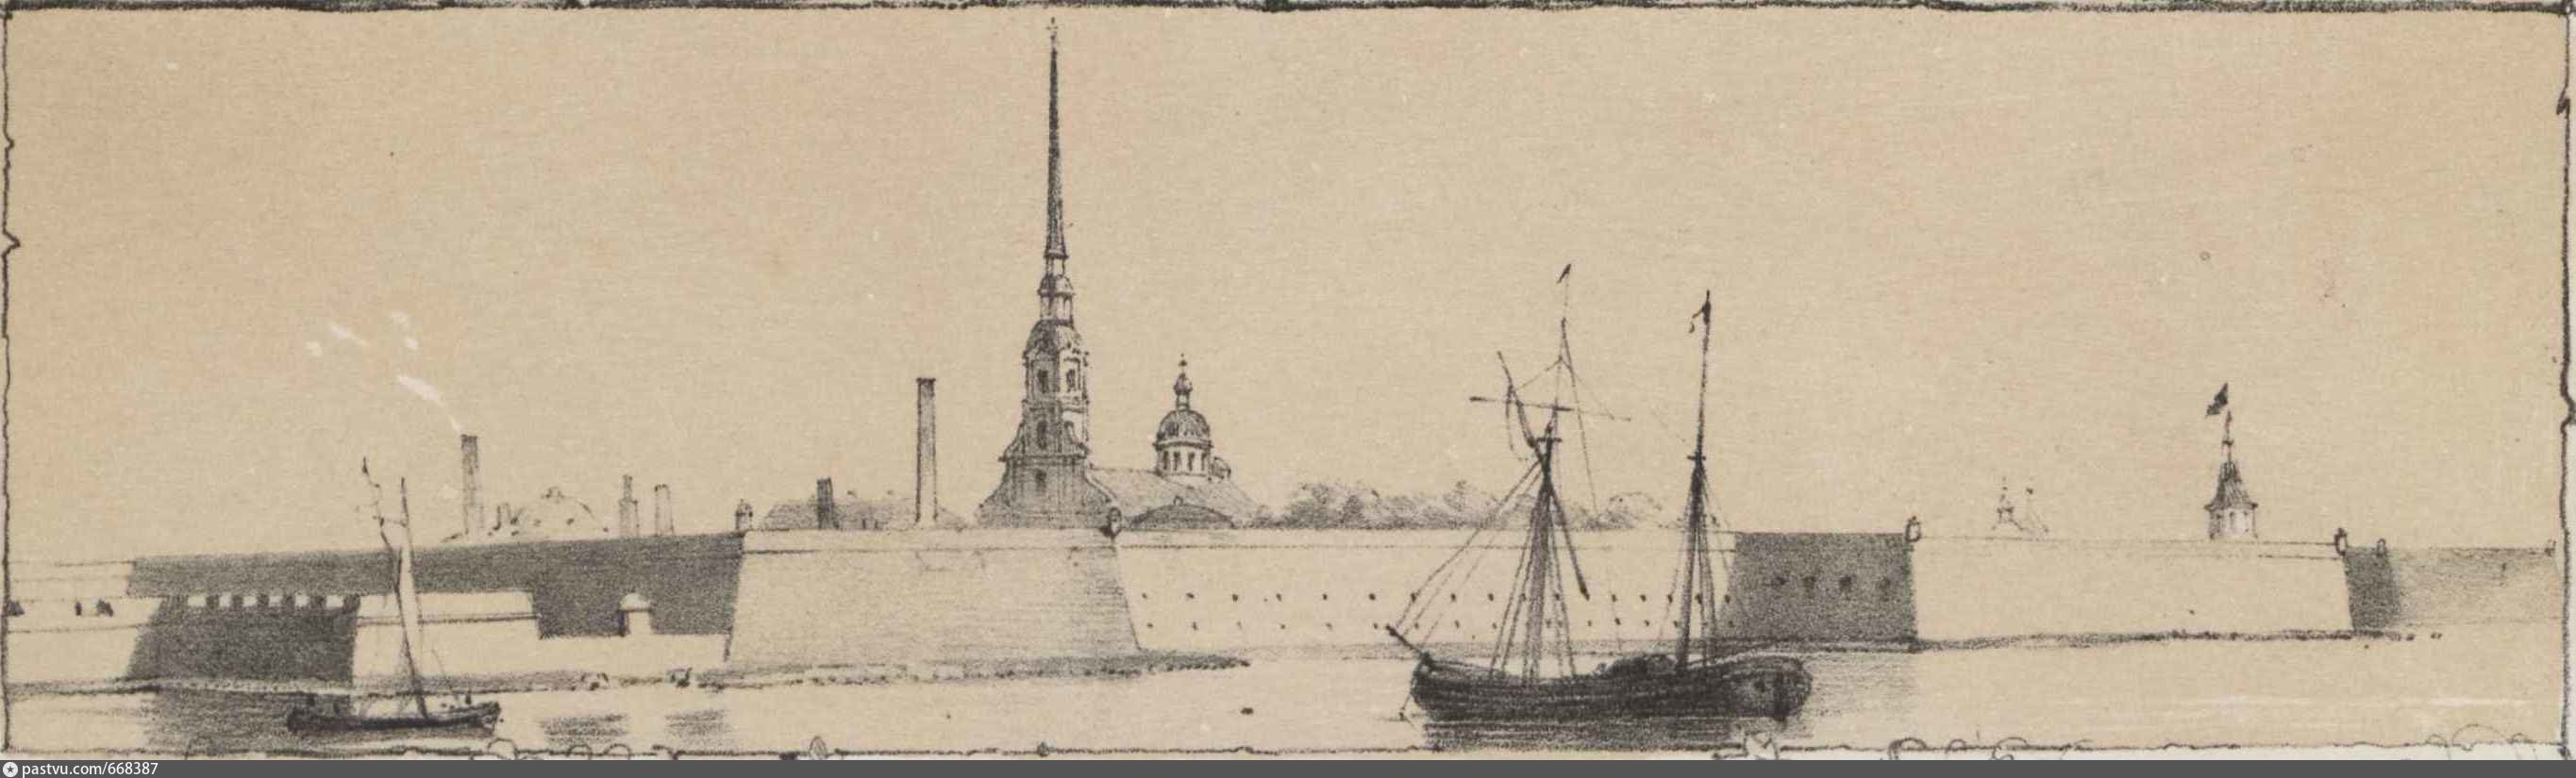 Петропавловская крепость в Санкт-Петербурге при Петре 1